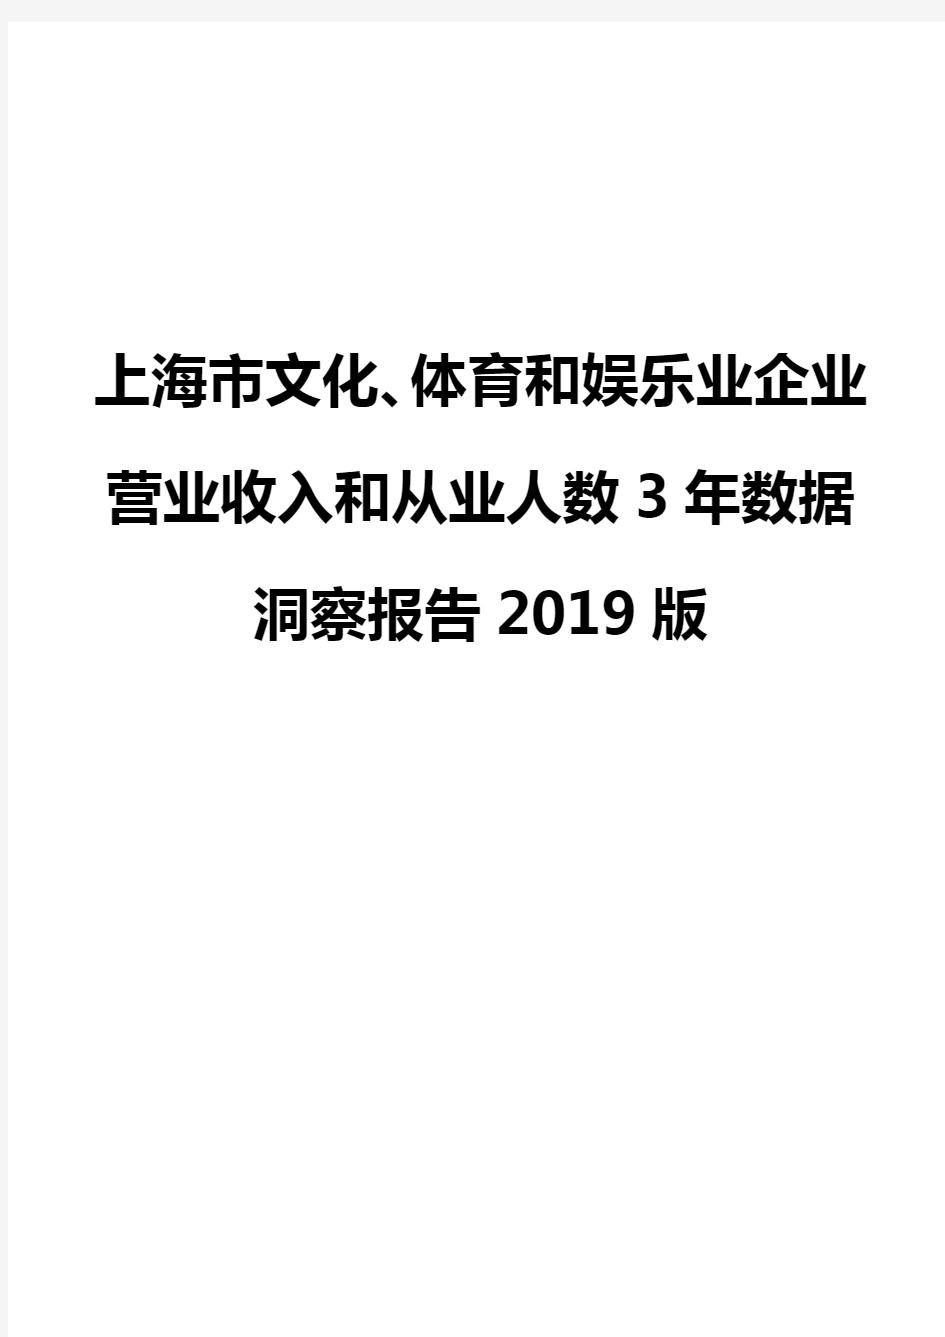 上海市文化、体育和娱乐业企业营业收入和从业人数3年数据洞察报告2019版